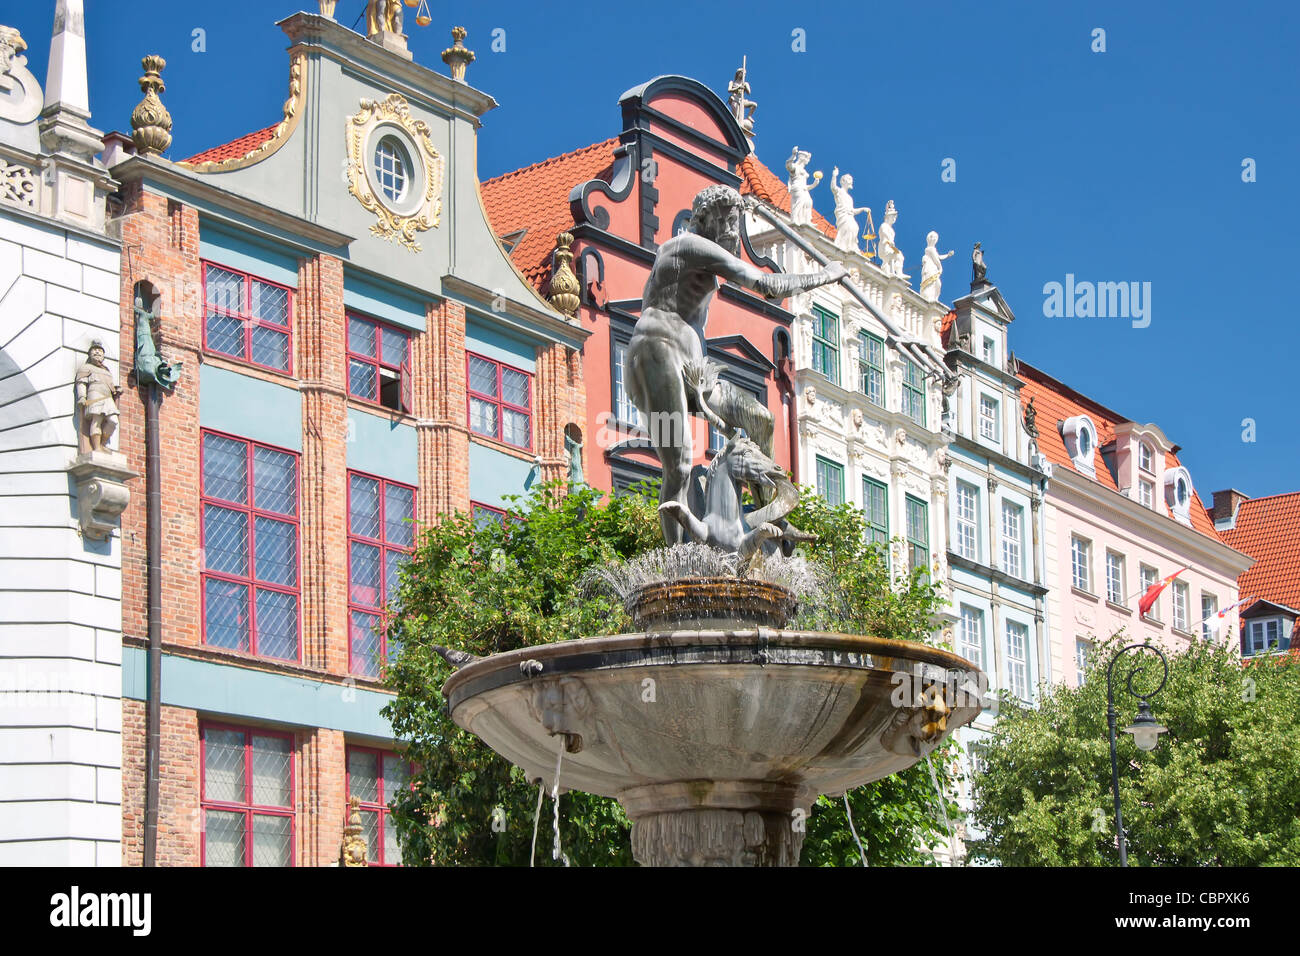 Les grandes villes en Pologne - GDANSK - Danzig. Port de la ville à la mer Baltique - Gdansk. Monuments historiques dans la vieille ville.Statue de Neptun. Banque D'Images